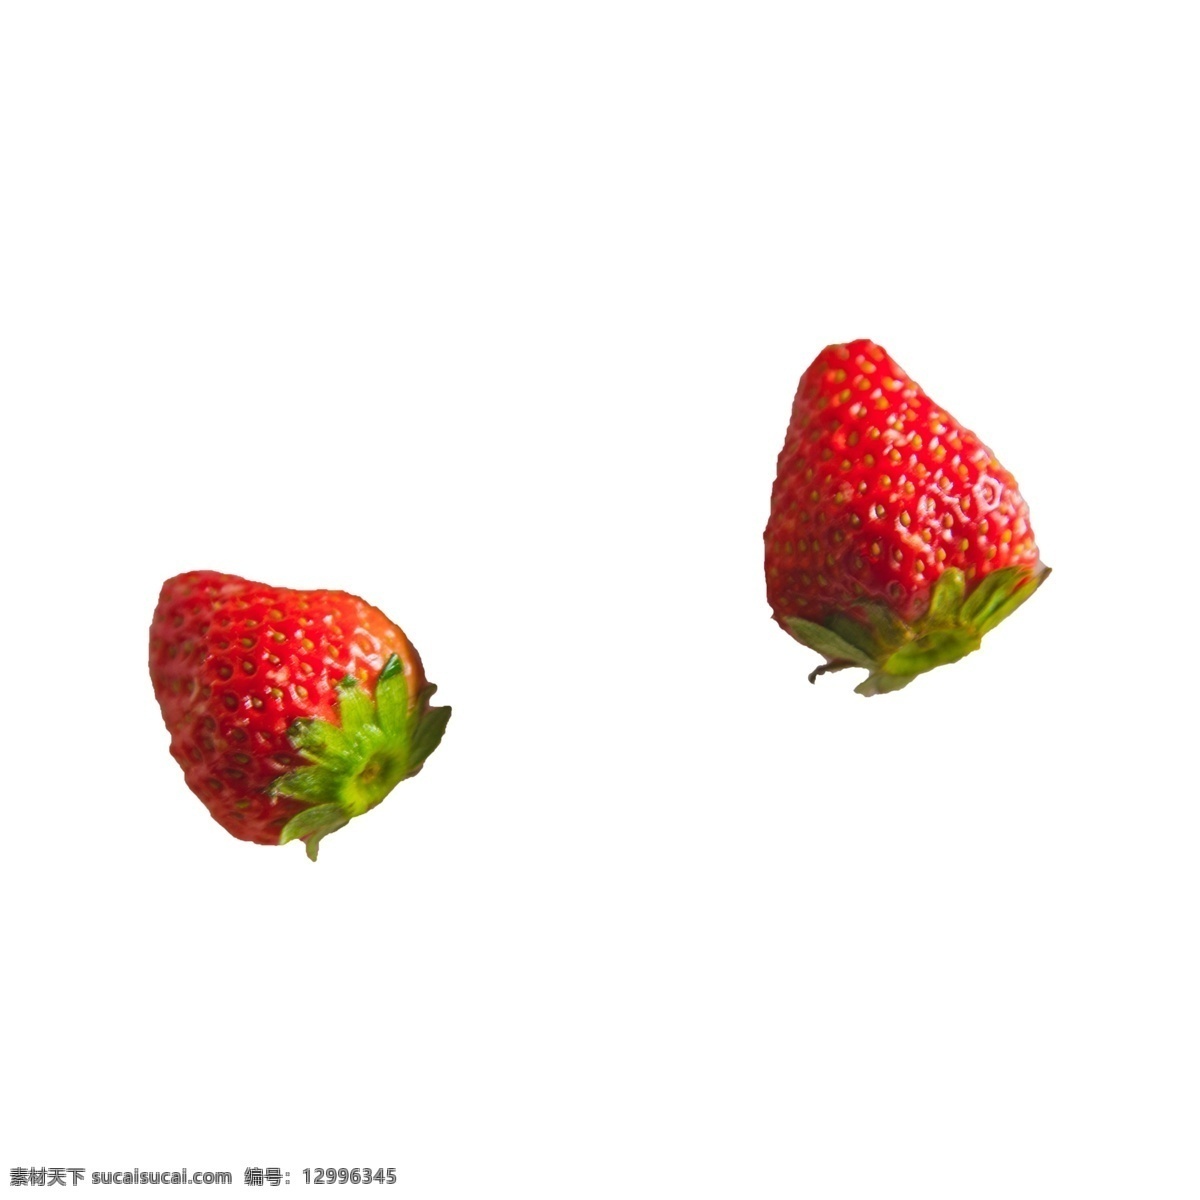 两 颗 草莓 实拍 免 抠 两颗草莓 营养 水果 新鲜 食物 实物拍摄 摆拍 红颜大草莓 奶油草莓 绿叶 植物 叶子